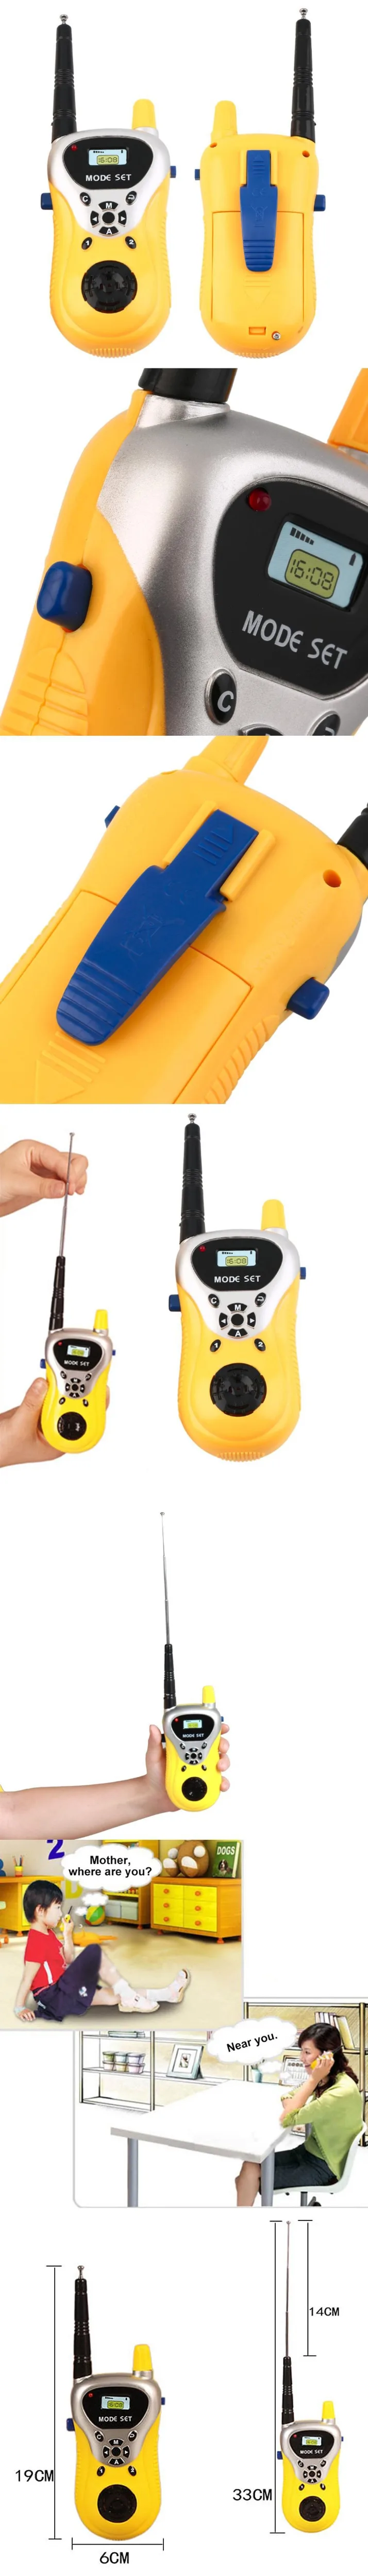 1 пара Handhold портативная рация игрушка детская игра интерактивная игрушка малыш милый малыш Радио электронный звуковые игрушки